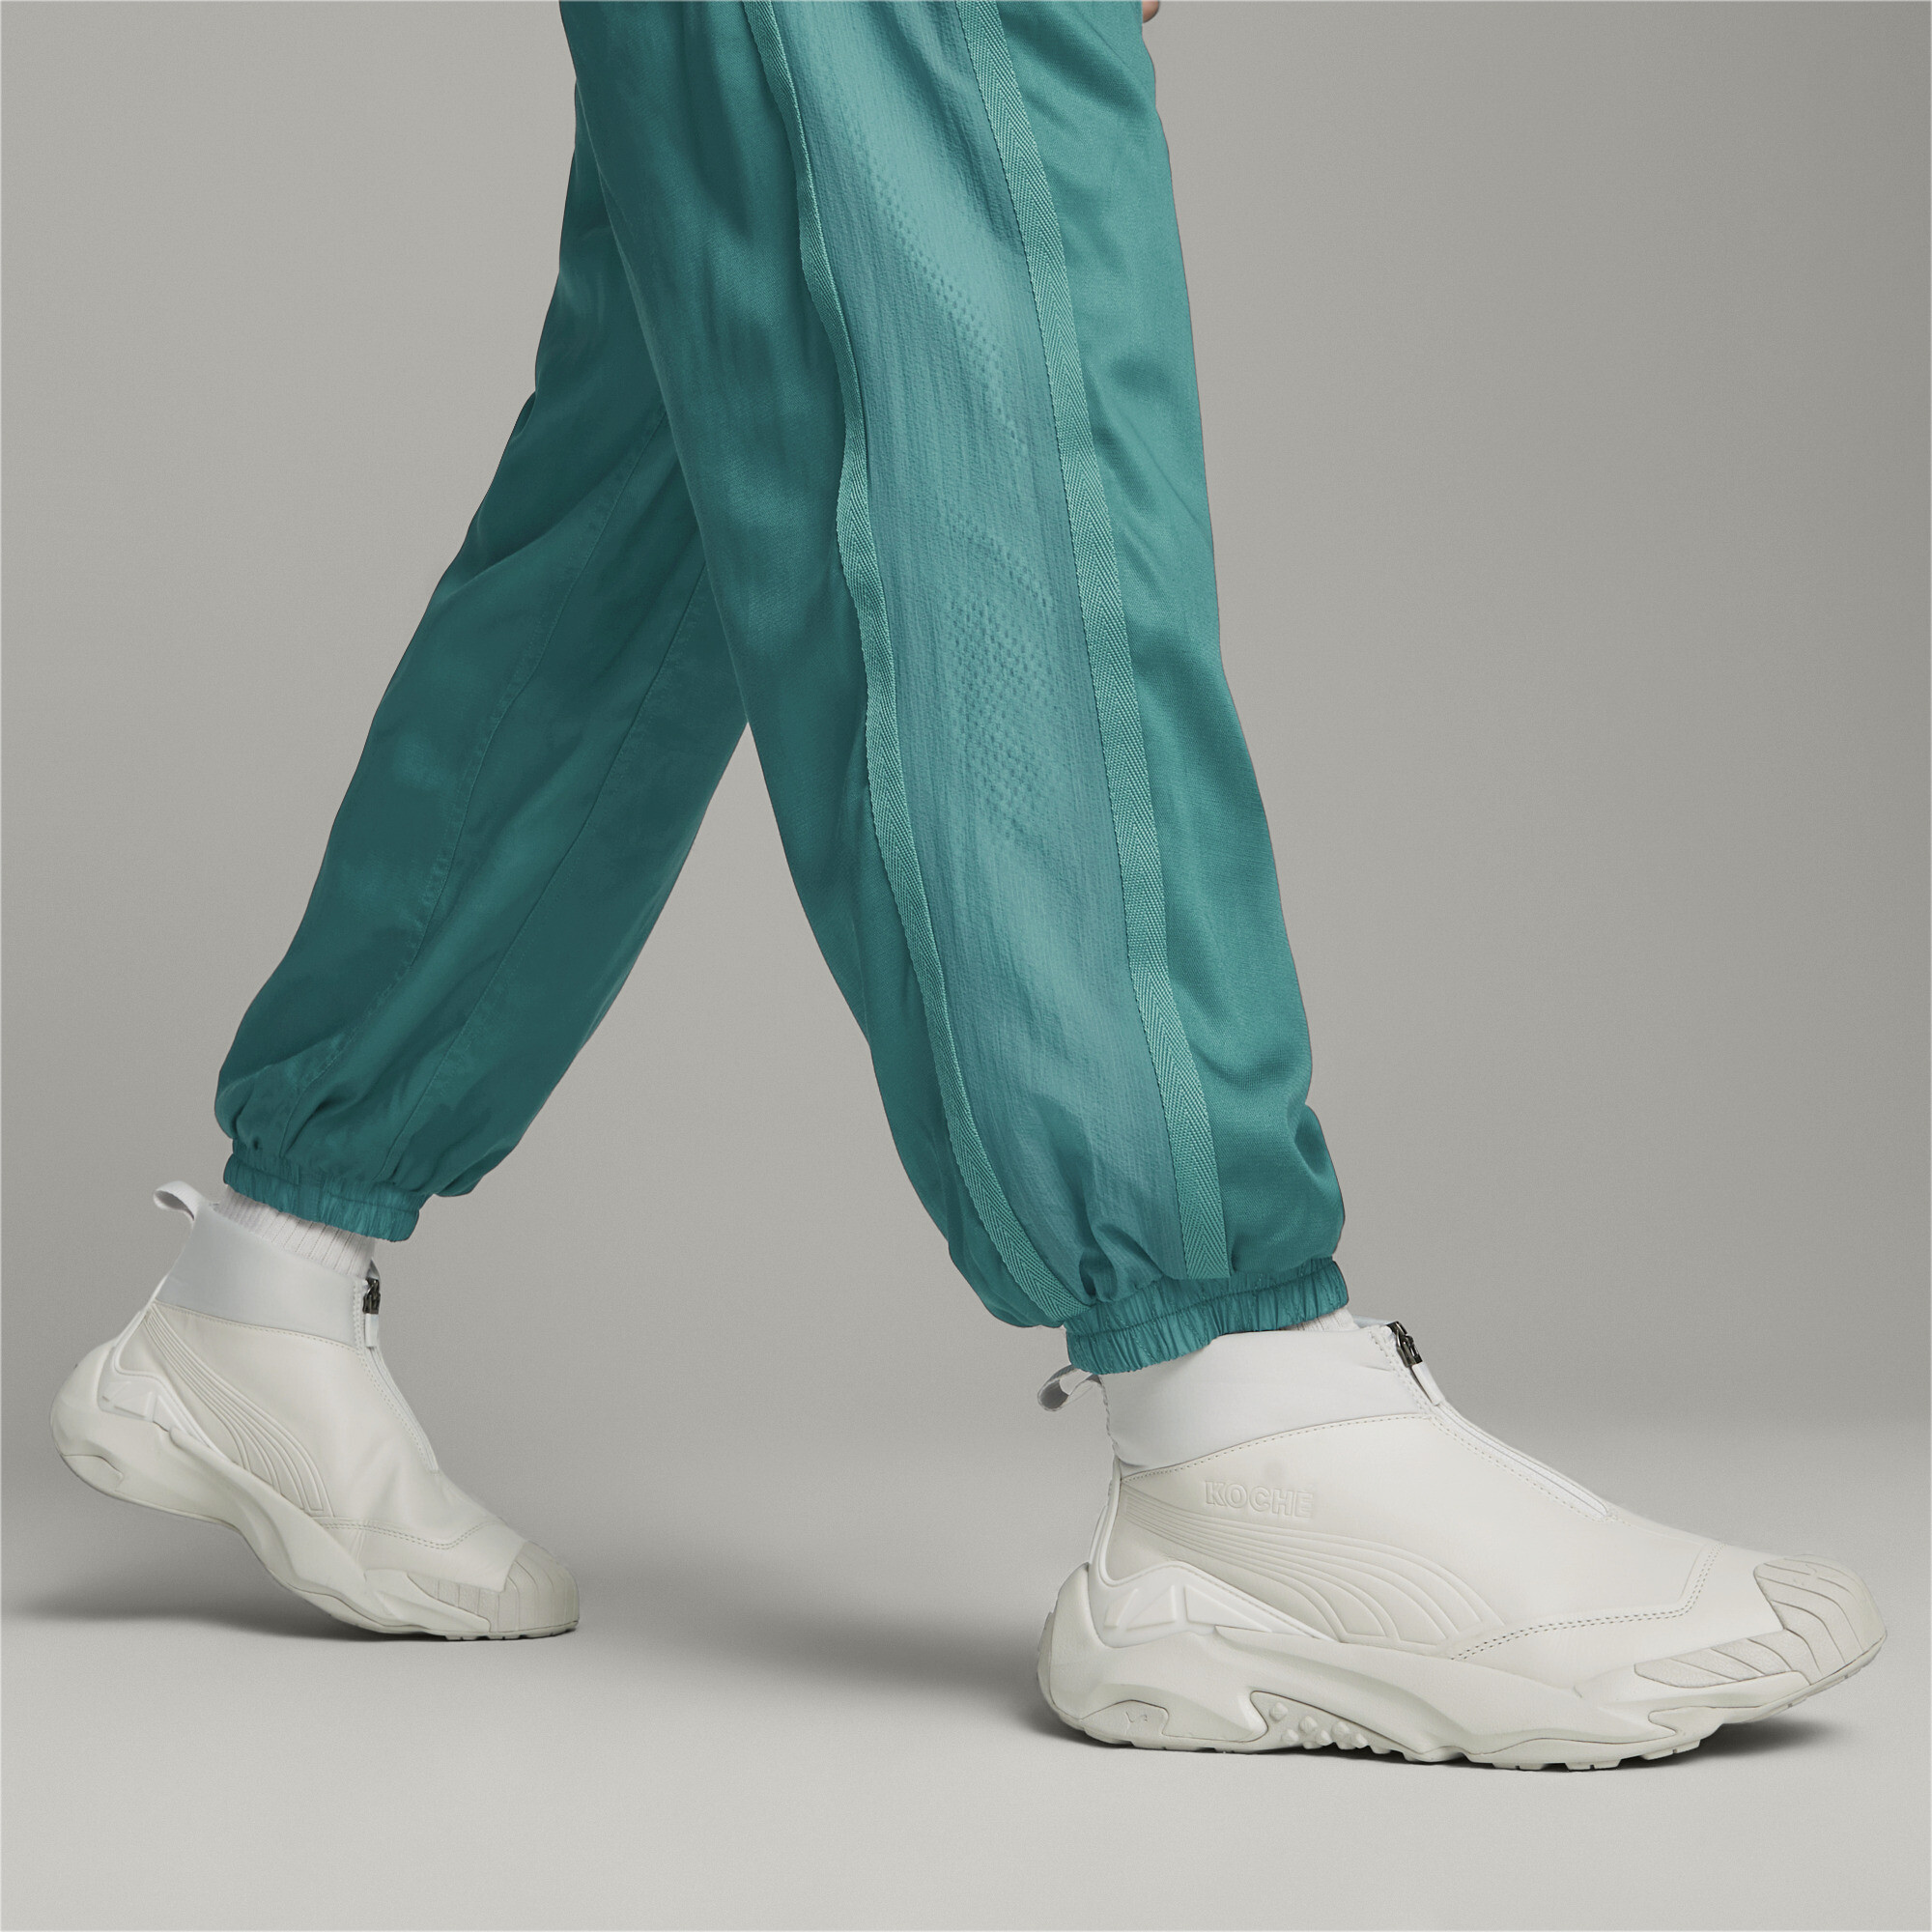 Men's PUMA X KOCHÃ Mid Plexus Sneakers In Gray, Size EU 39